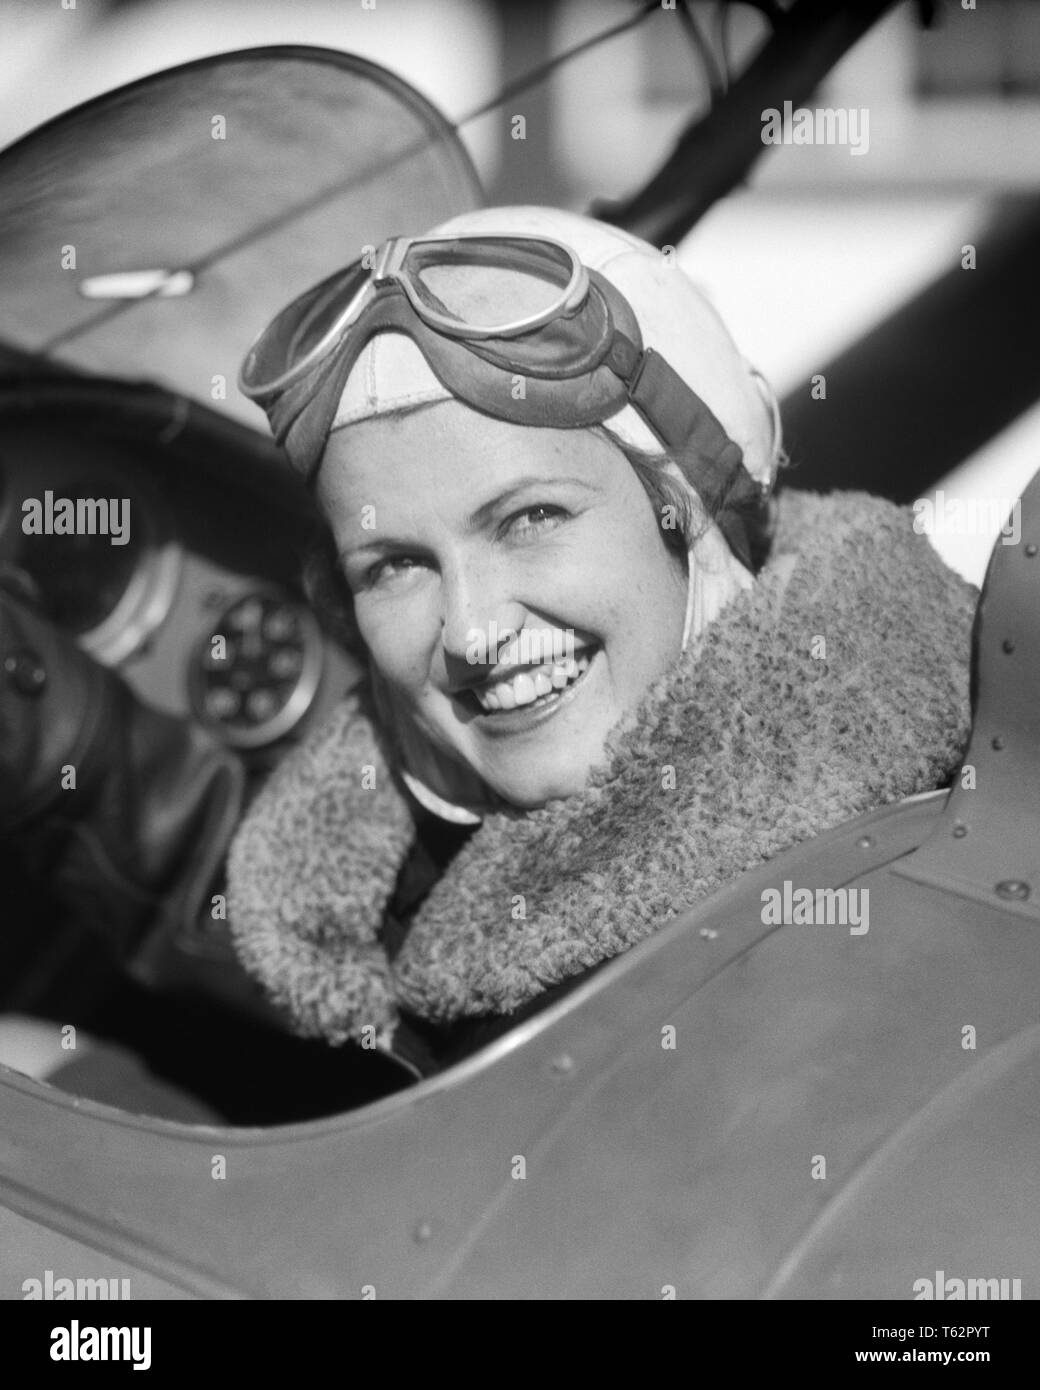 1930er Jahre Frau Pilot im Cockpit des Flugzeugs lächelnd in die Kamera Pelz Kragen auf Jacke und Brille auf den Kopf geschoben - ein 4370 HAR 001 HARS GESICHTSBEHANDLUNG STIL Willkommen freuen FREUDE LIFESTYLE FLUGZEUGE FRAUEN JOBS DAMEN PERSONEN SCHUTZBRILLE RISIKO VERTRAUEN TRANSPORT AUSDRÜCKE B&W AUGENKONTAKT SKILL BERUF GLÜCK FÄHIGKEITEN THRILL, KOPF UND SCHULTERN FRÖHLICHEN ABENTEUER FLUGZEUGE UND IN DER LUFTFAHRT BESCHÄFTIGUNG BERUFE GEDRÄNGT LÄCHELT COCKPIT PELZKRAGEN AVIATOR FREUDIGE STILVOLLE FLIEGERIN Mitte - Mitte - ERWACHSENE FRAU SCHWARZ UND WEISS BRAVE KAUKASISCHEN ETHNIE HAR 001 ALTMODISCH sitzen Stockfoto